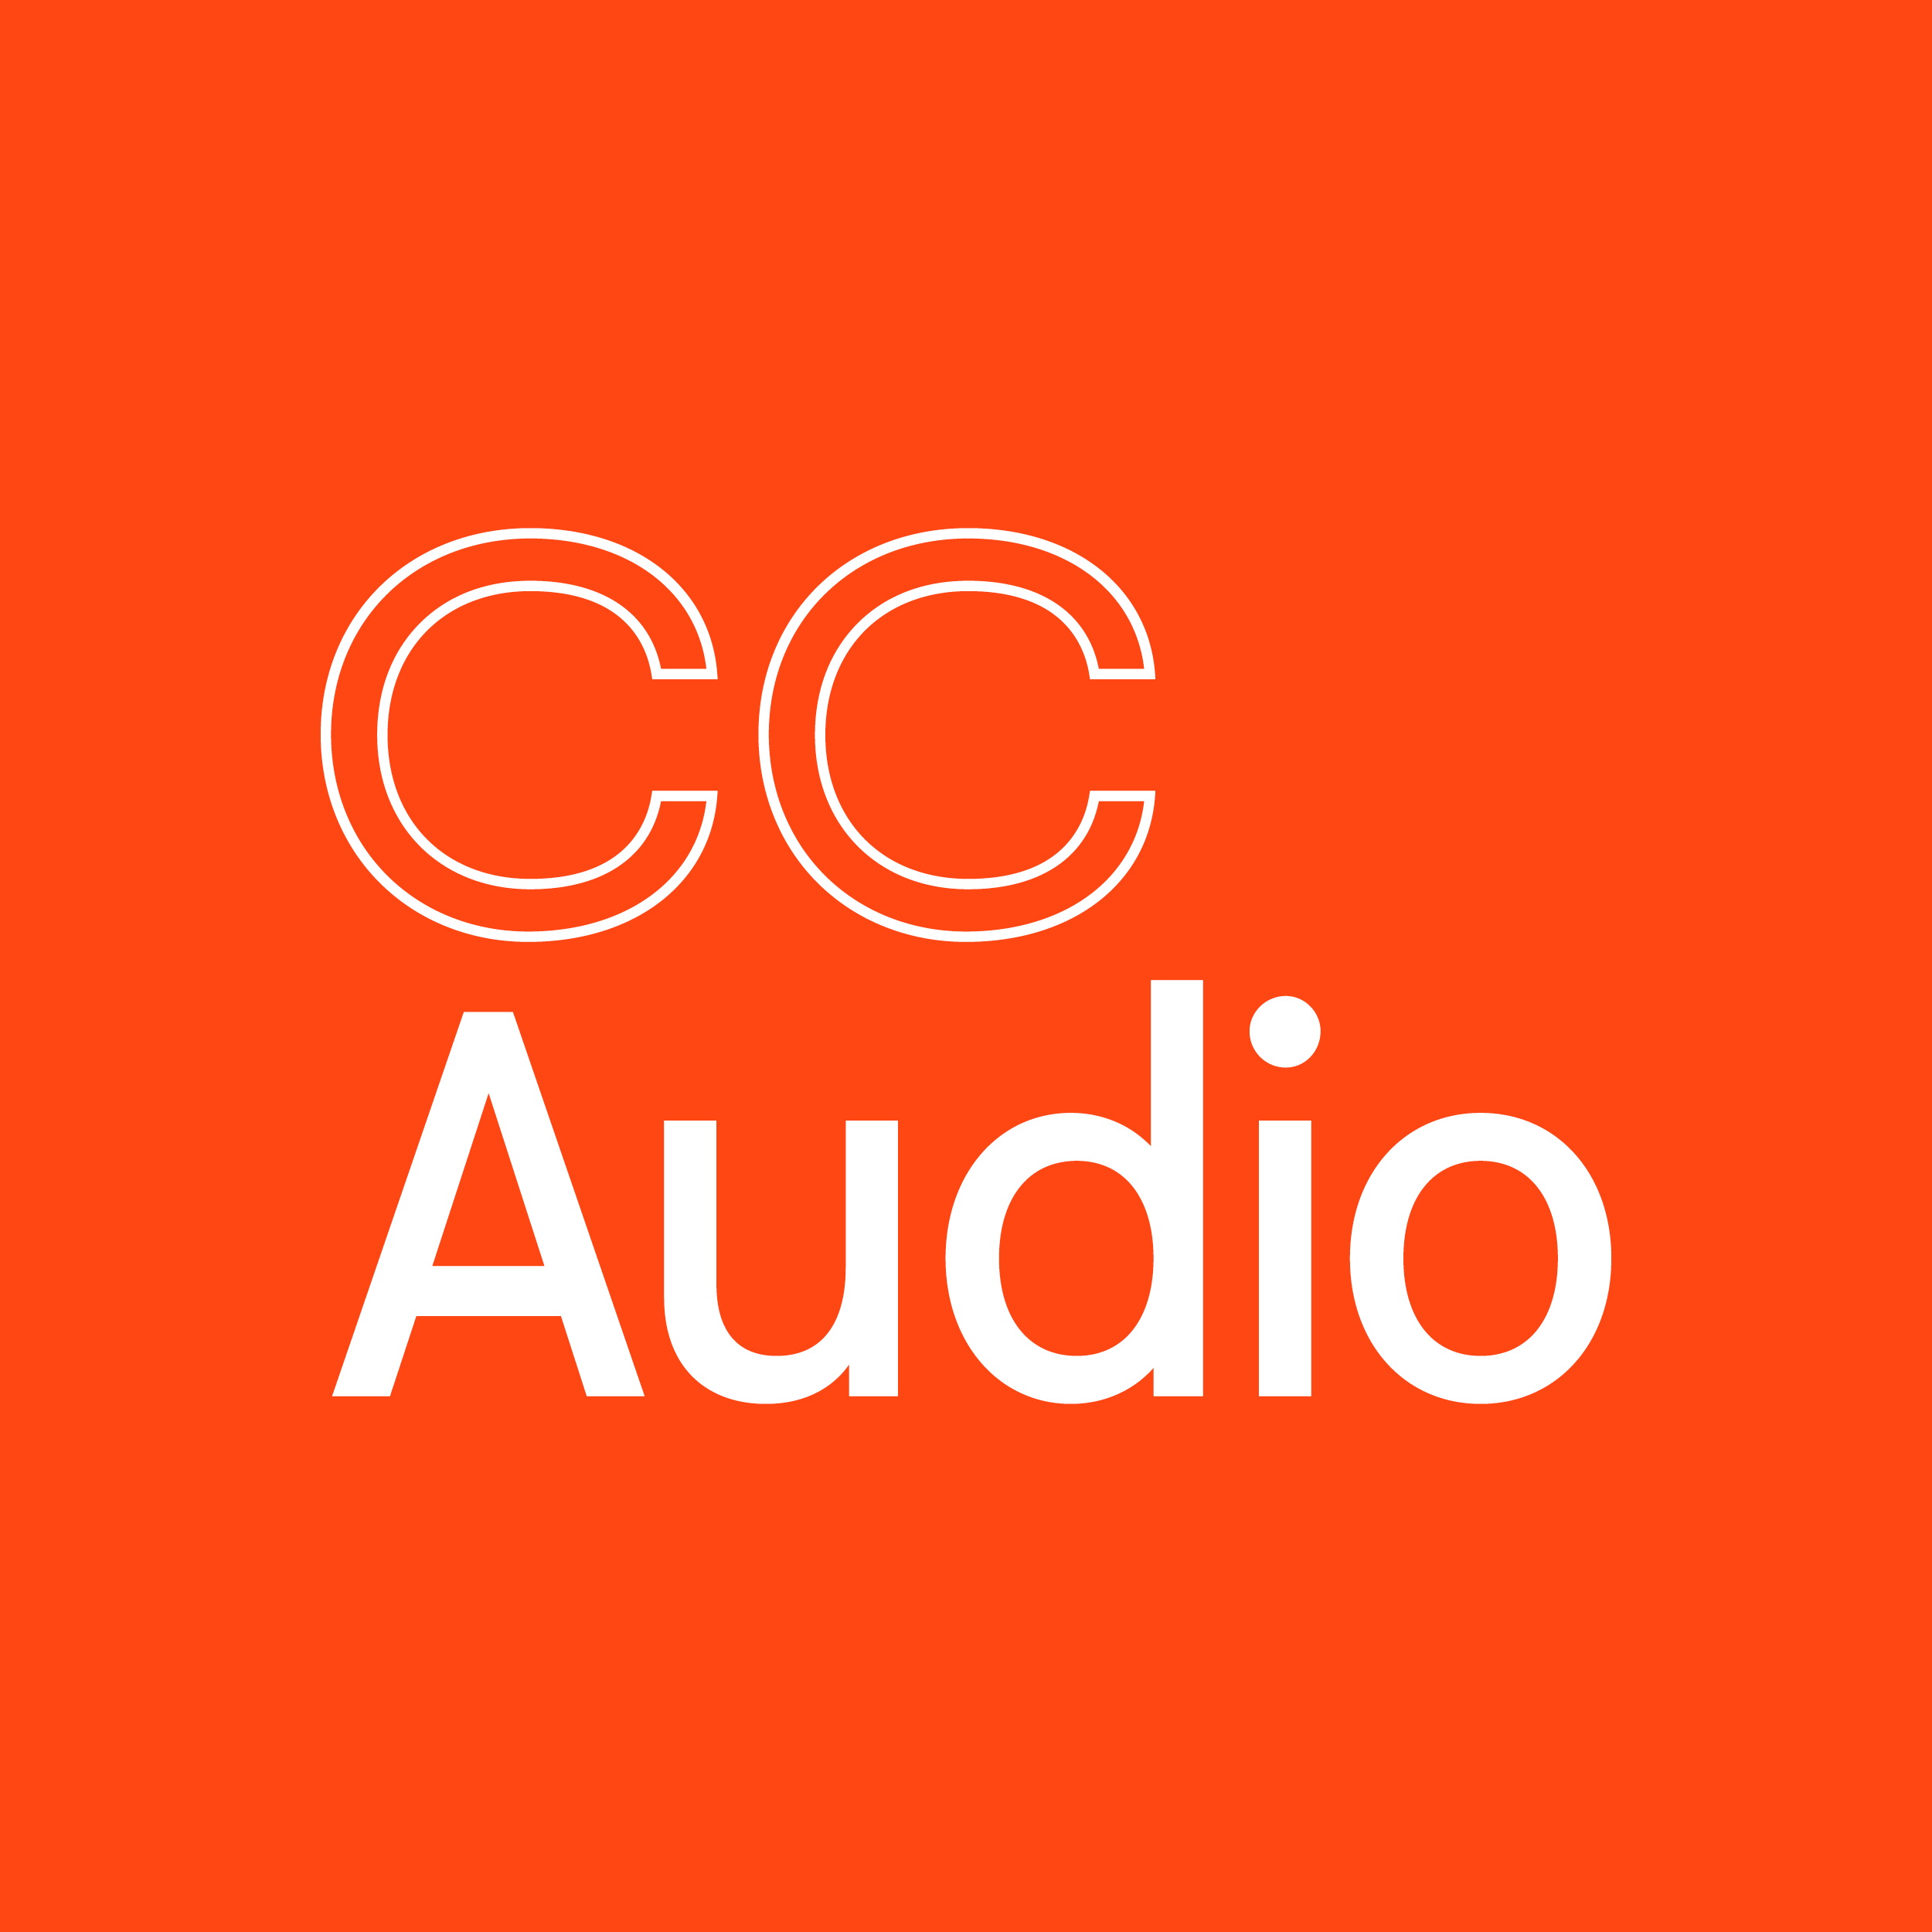 CC Audio, Copenhagen Contemporary